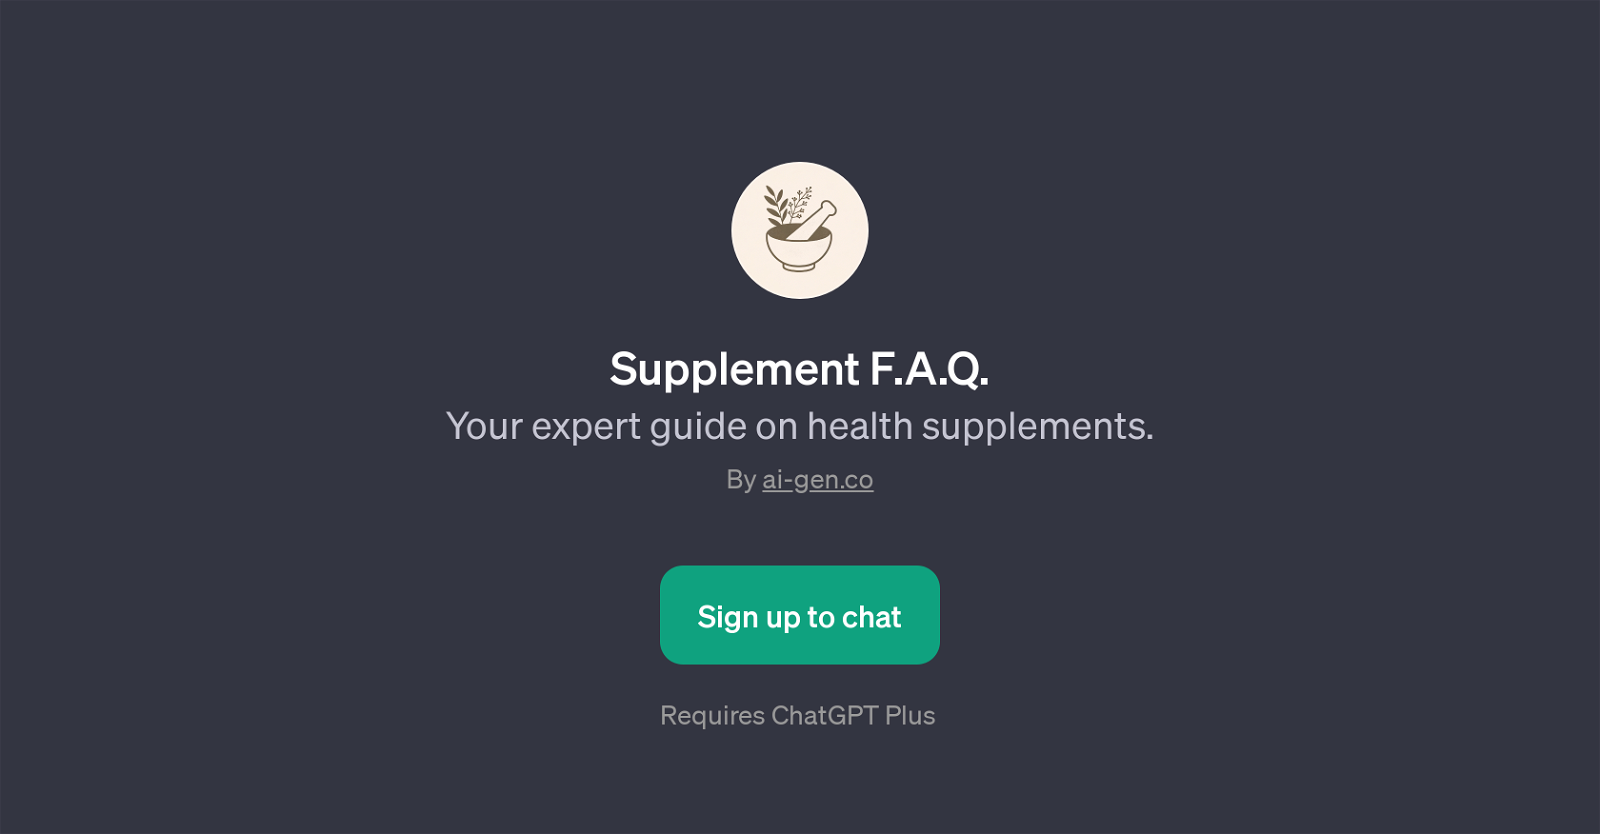 Supplement F.A.Q website